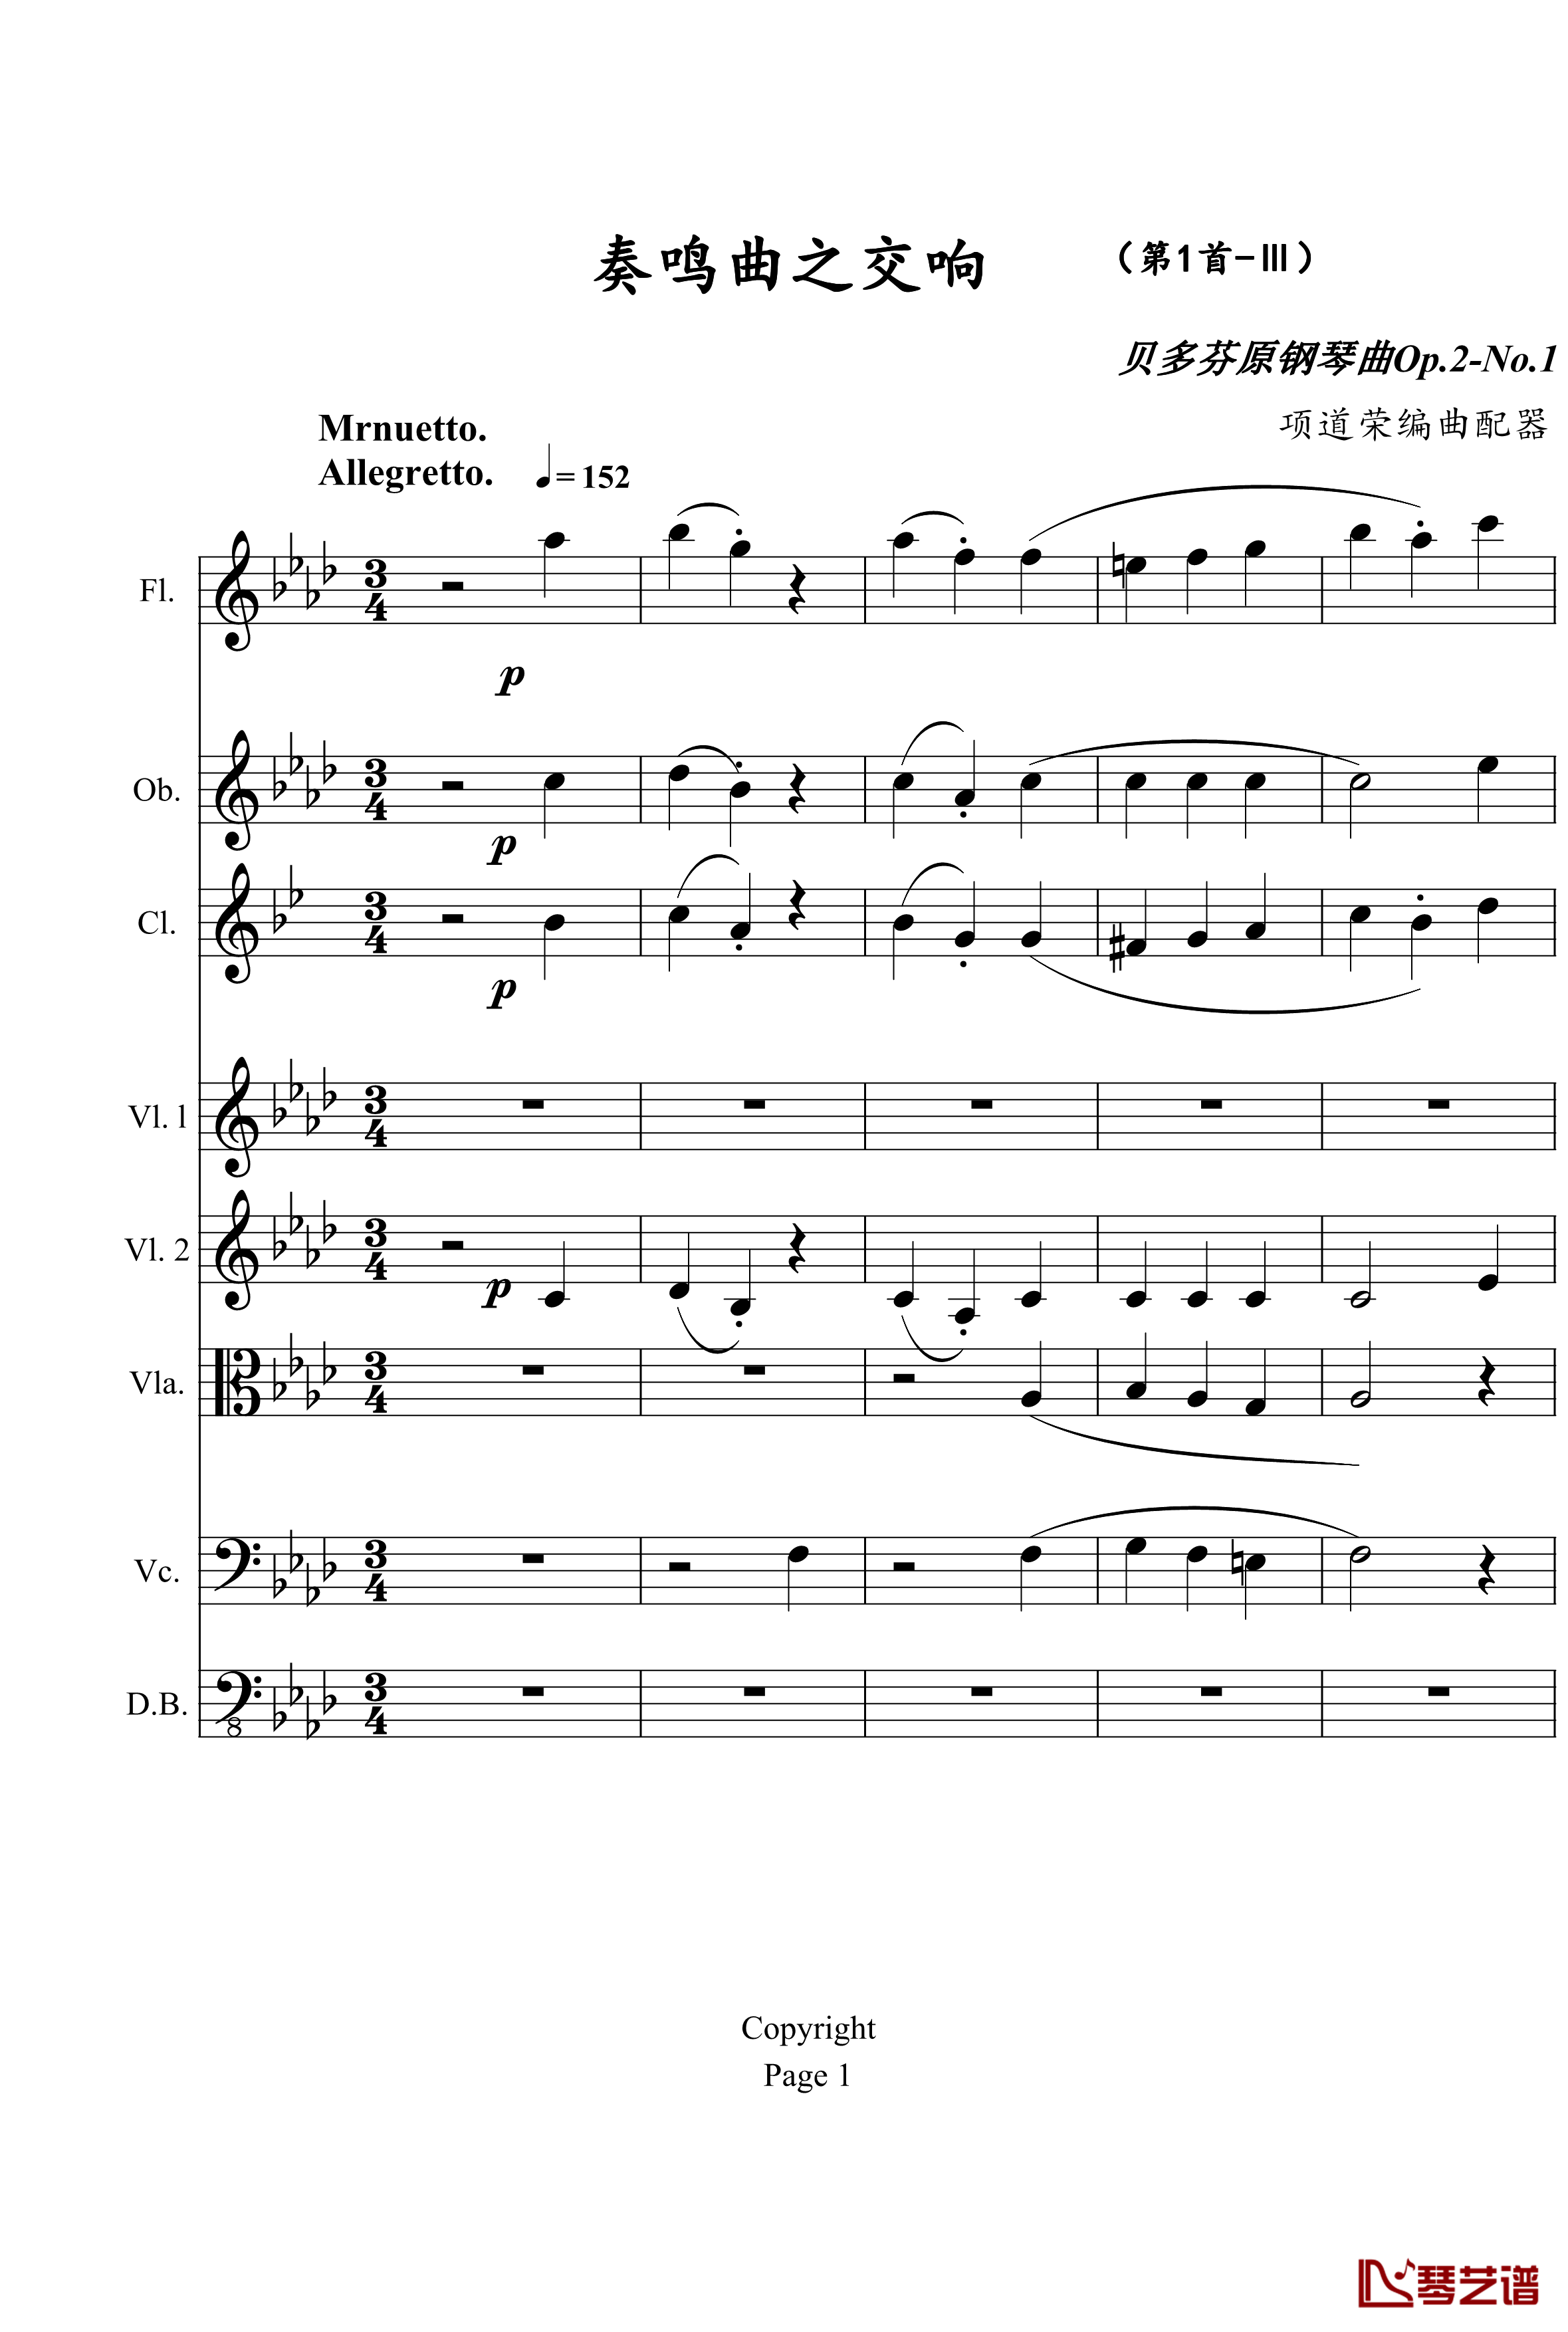 奏鸣曲之交响钢琴谱-第1首-Ⅲ-贝多芬-beethoven1